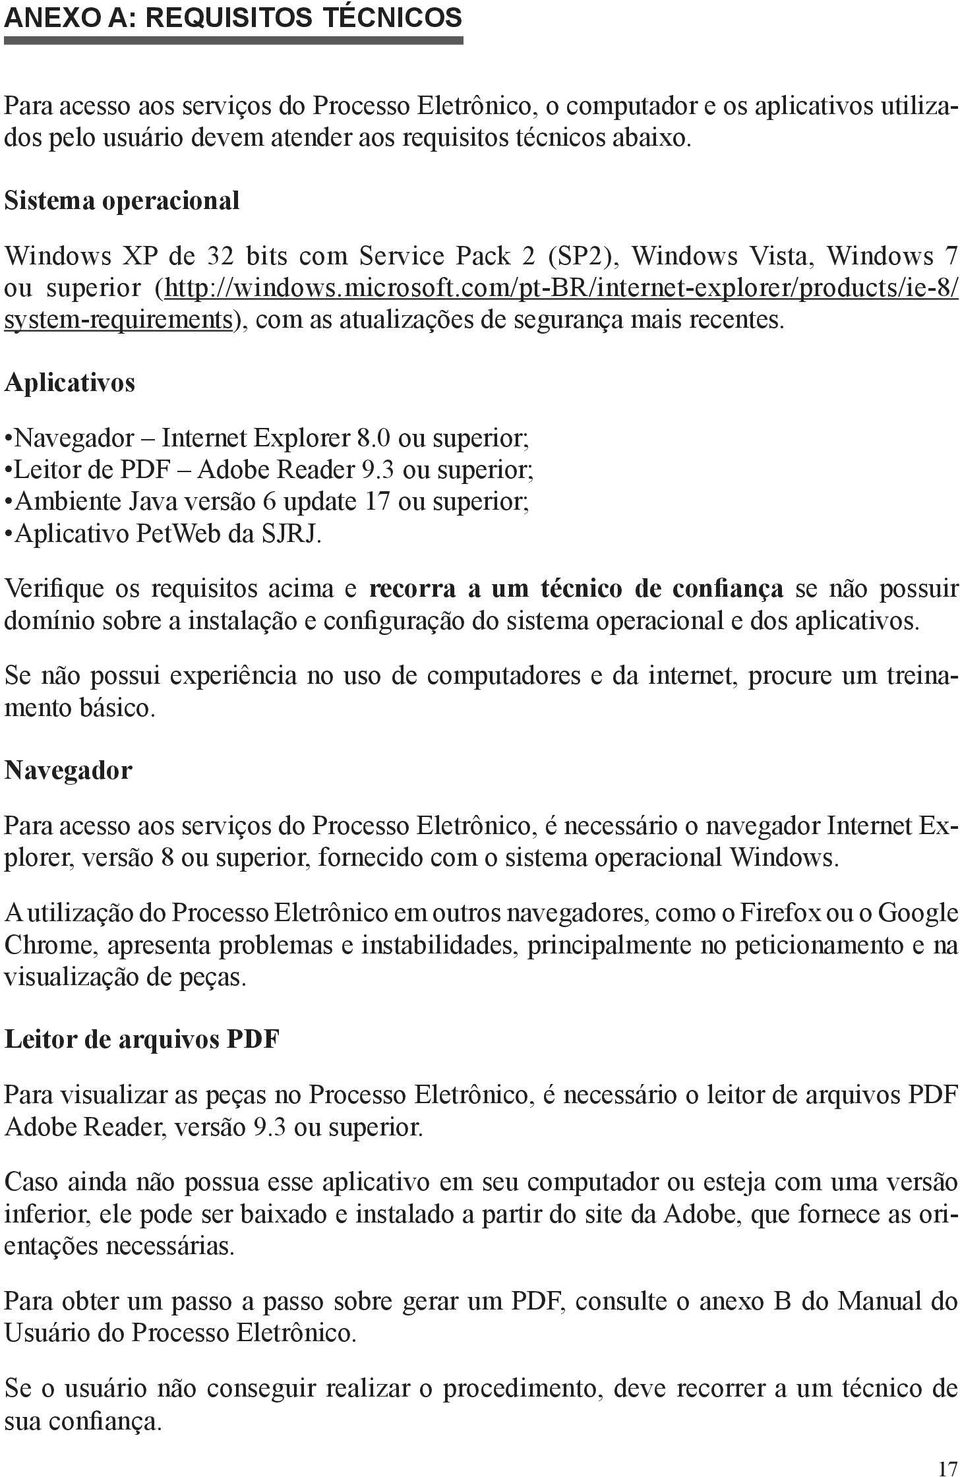 com/pt-br/internet-explorer/products/ie-8/ system-requirements), com as atualizações de segurança mais recentes. Aplicativos Navegador Internet Explorer 8.0 ou superior; Leitor de PDF Adobe Reader 9.